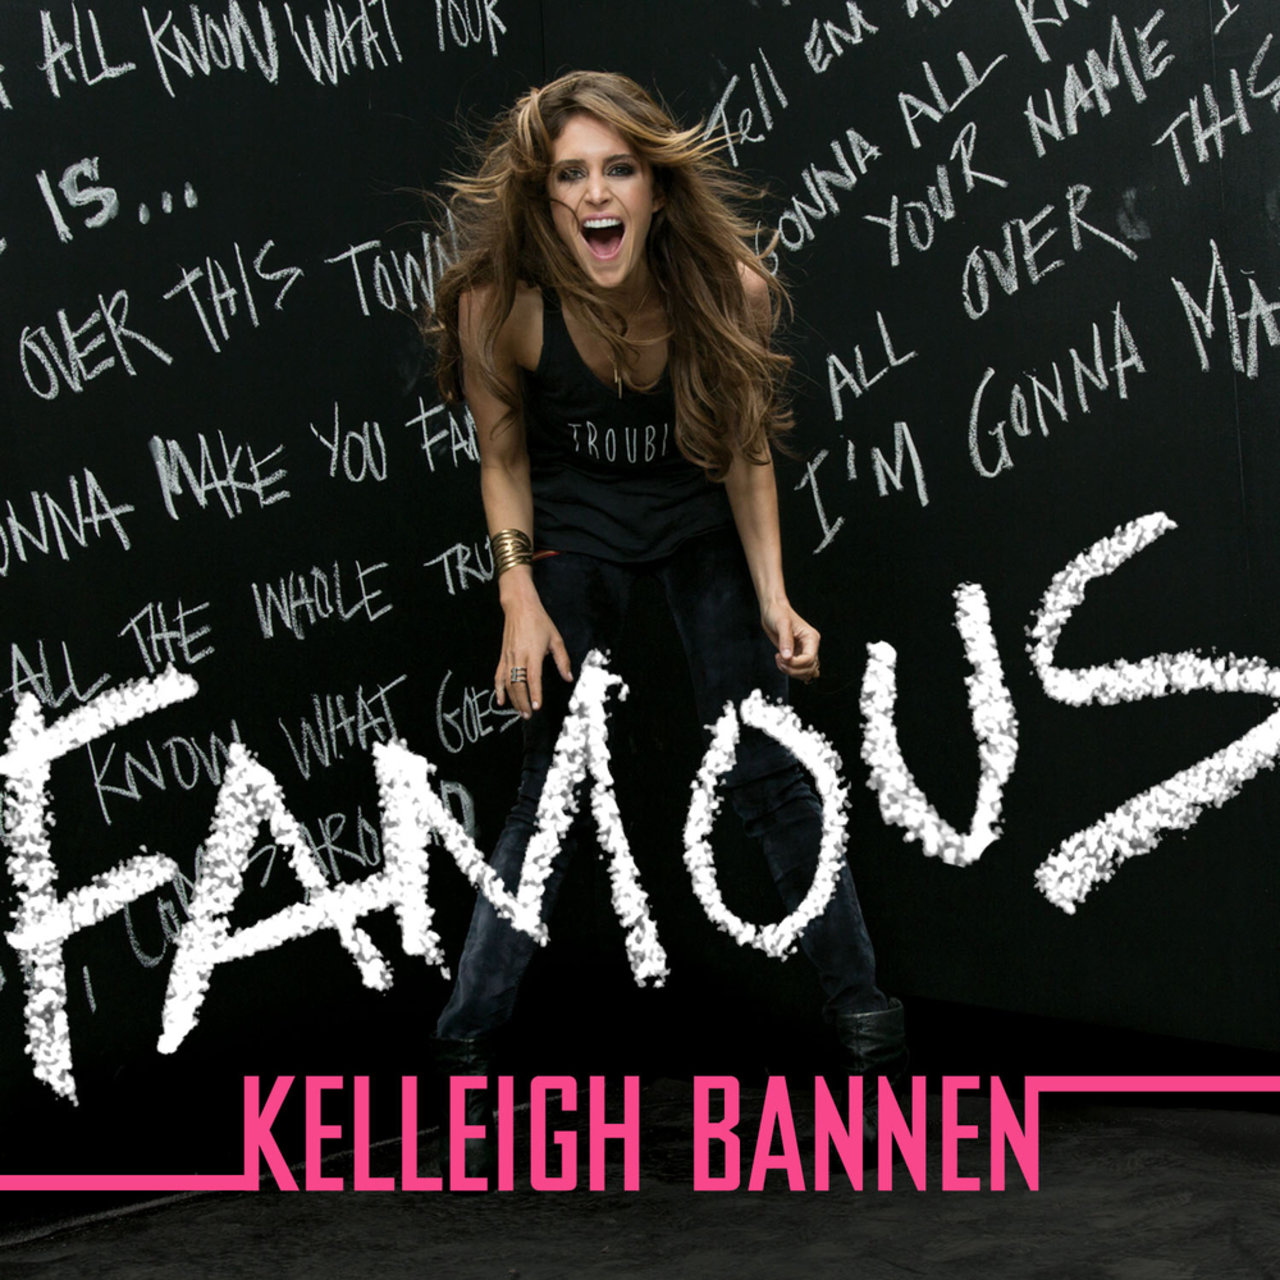 Kelleigh Bannen Famous cover artwork